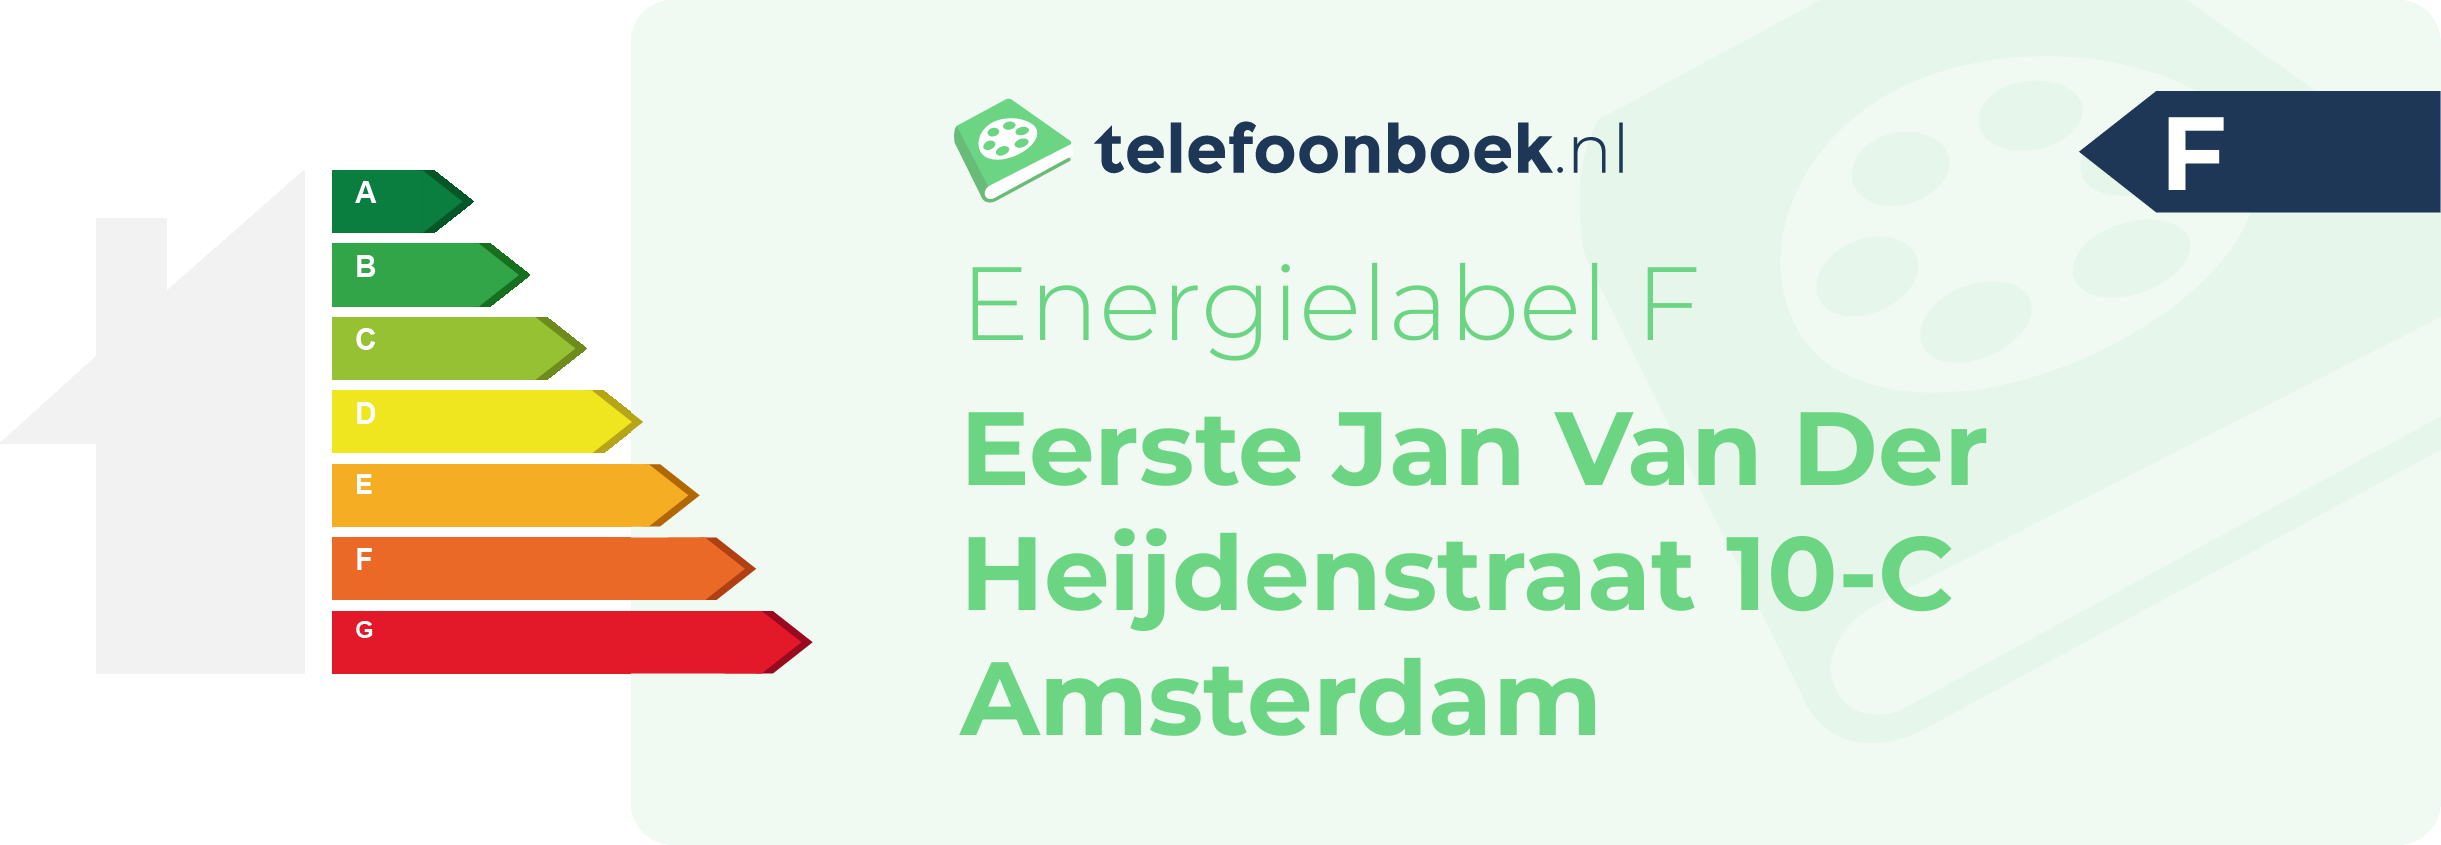 Energielabel Eerste Jan Van Der Heijdenstraat 10-C Amsterdam